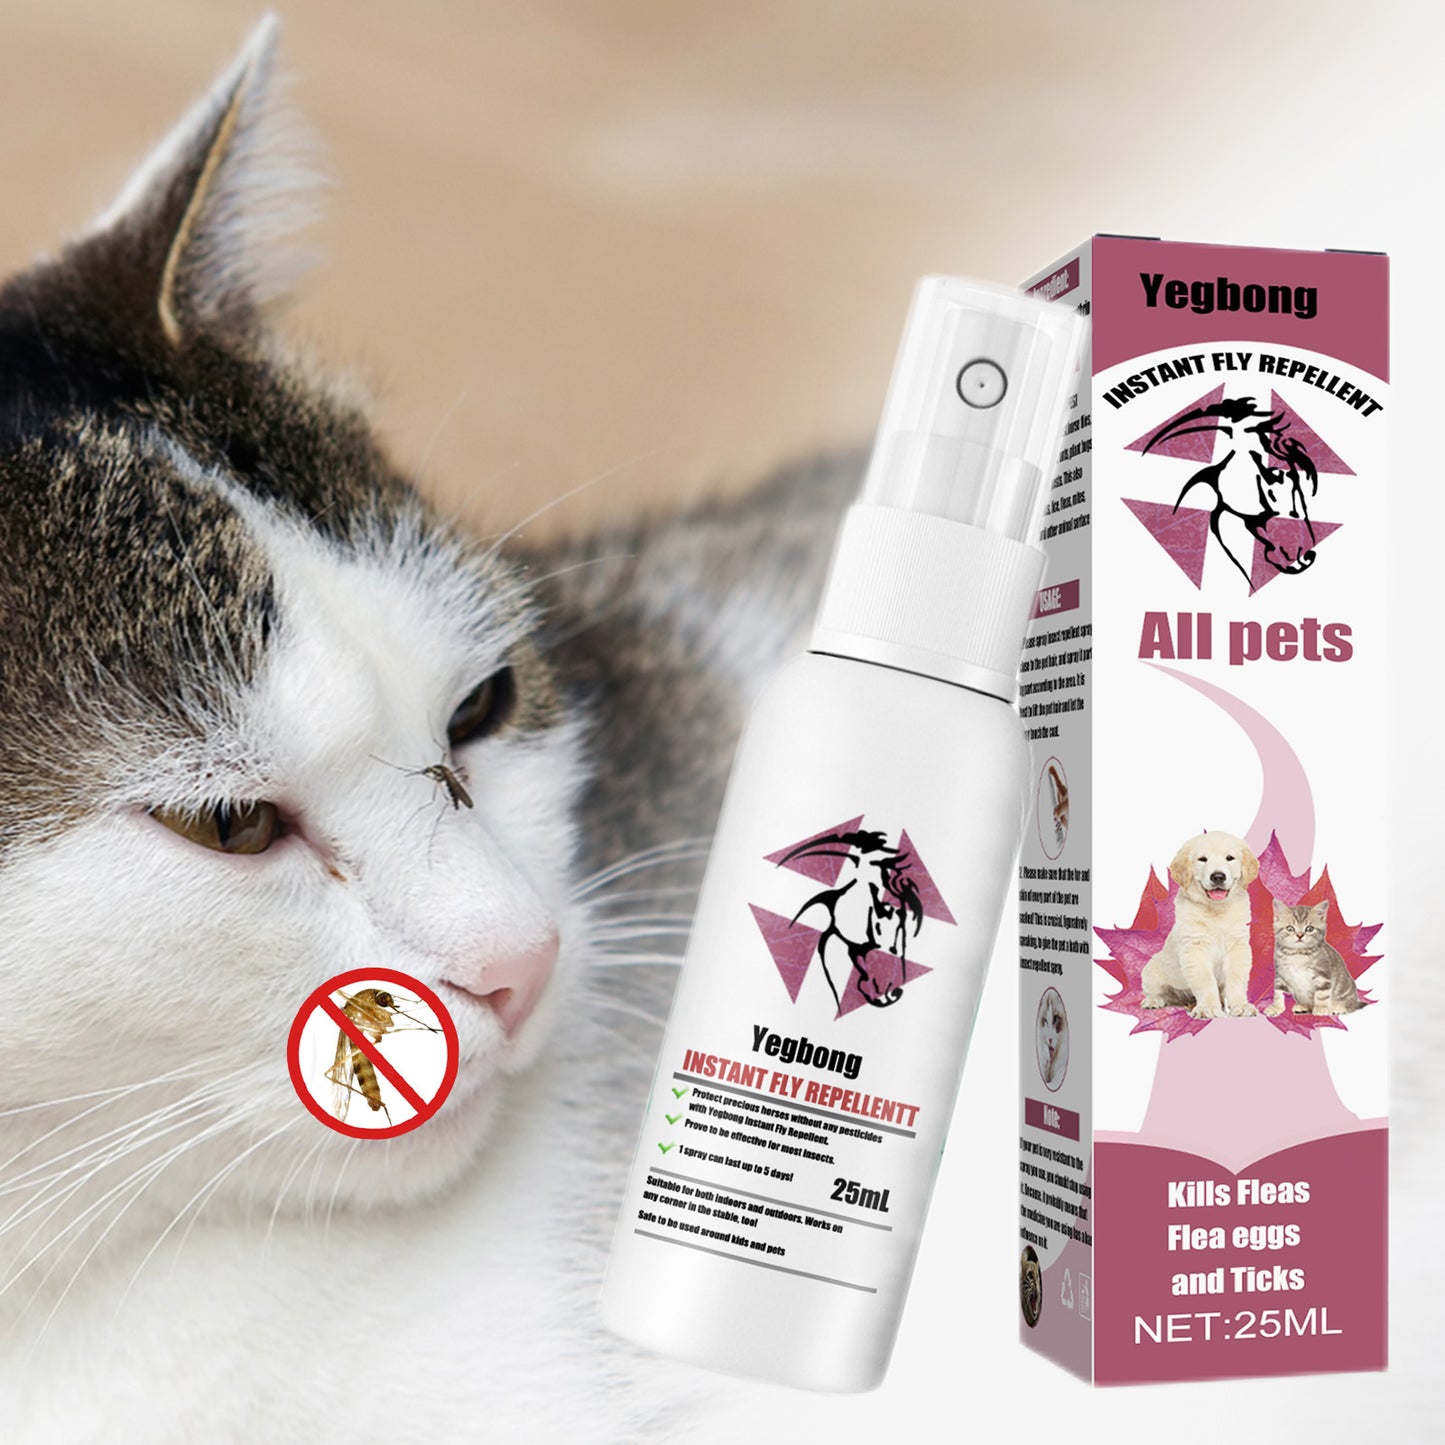 Pulverizador de Piel para Mascotas: ¡Dile Adiós a las Pulgas y Mosquitos!